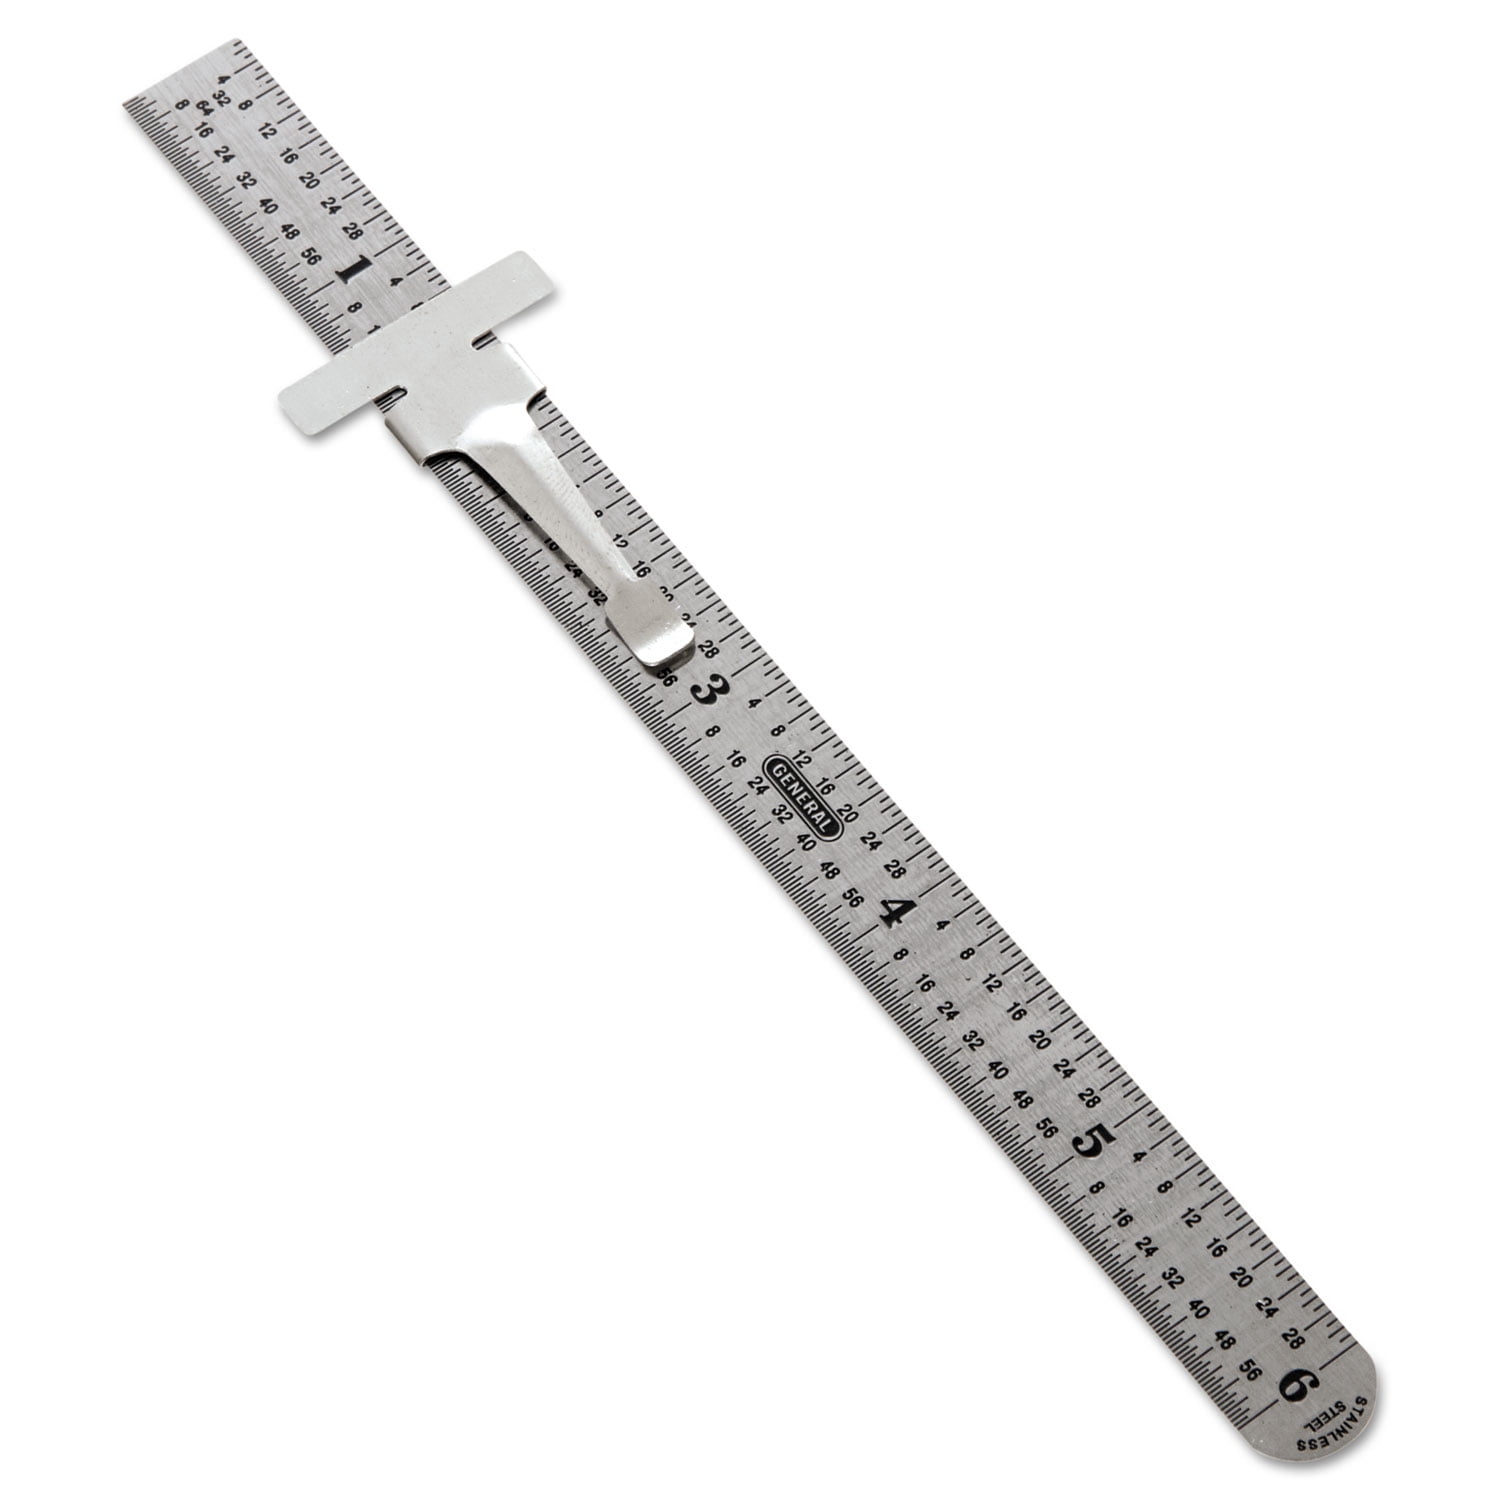 Easy Read Stainless Steel Ruler Standard/Metric 